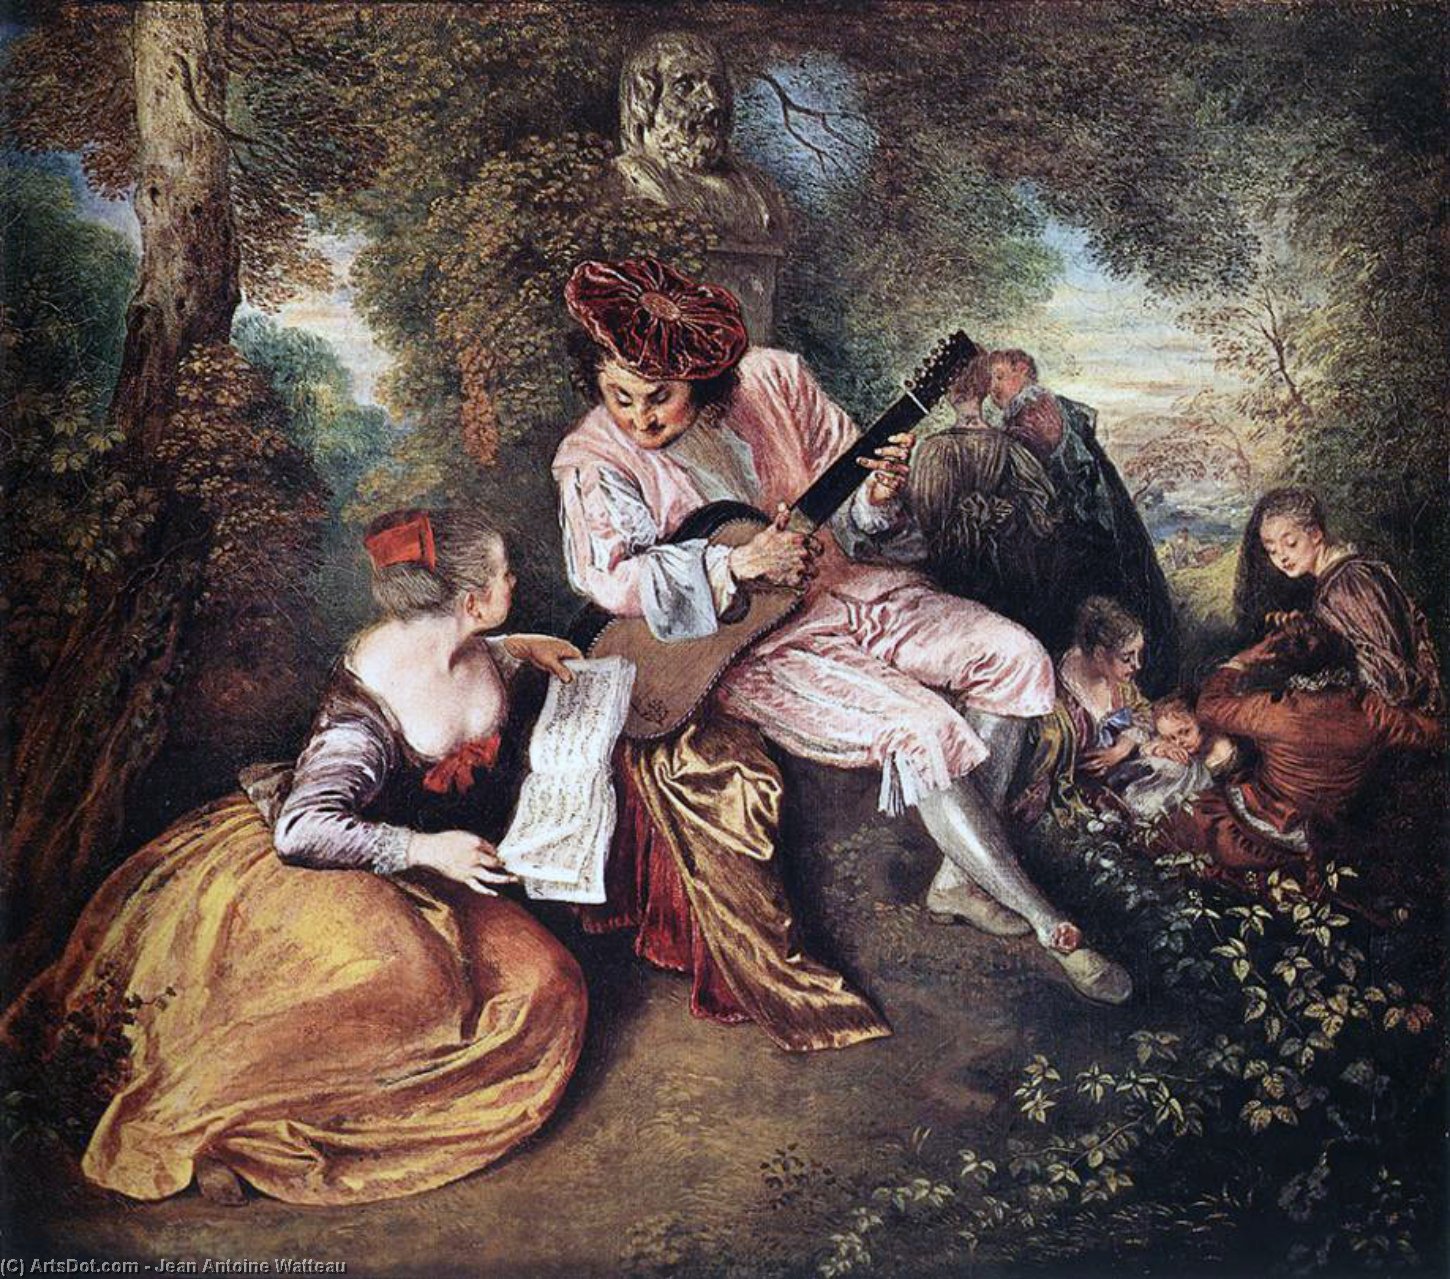 WikiOO.org - Encyclopedia of Fine Arts - Maleri, Artwork Jean Antoine Watteau - 'La gamme d'amour' (The Love Song)